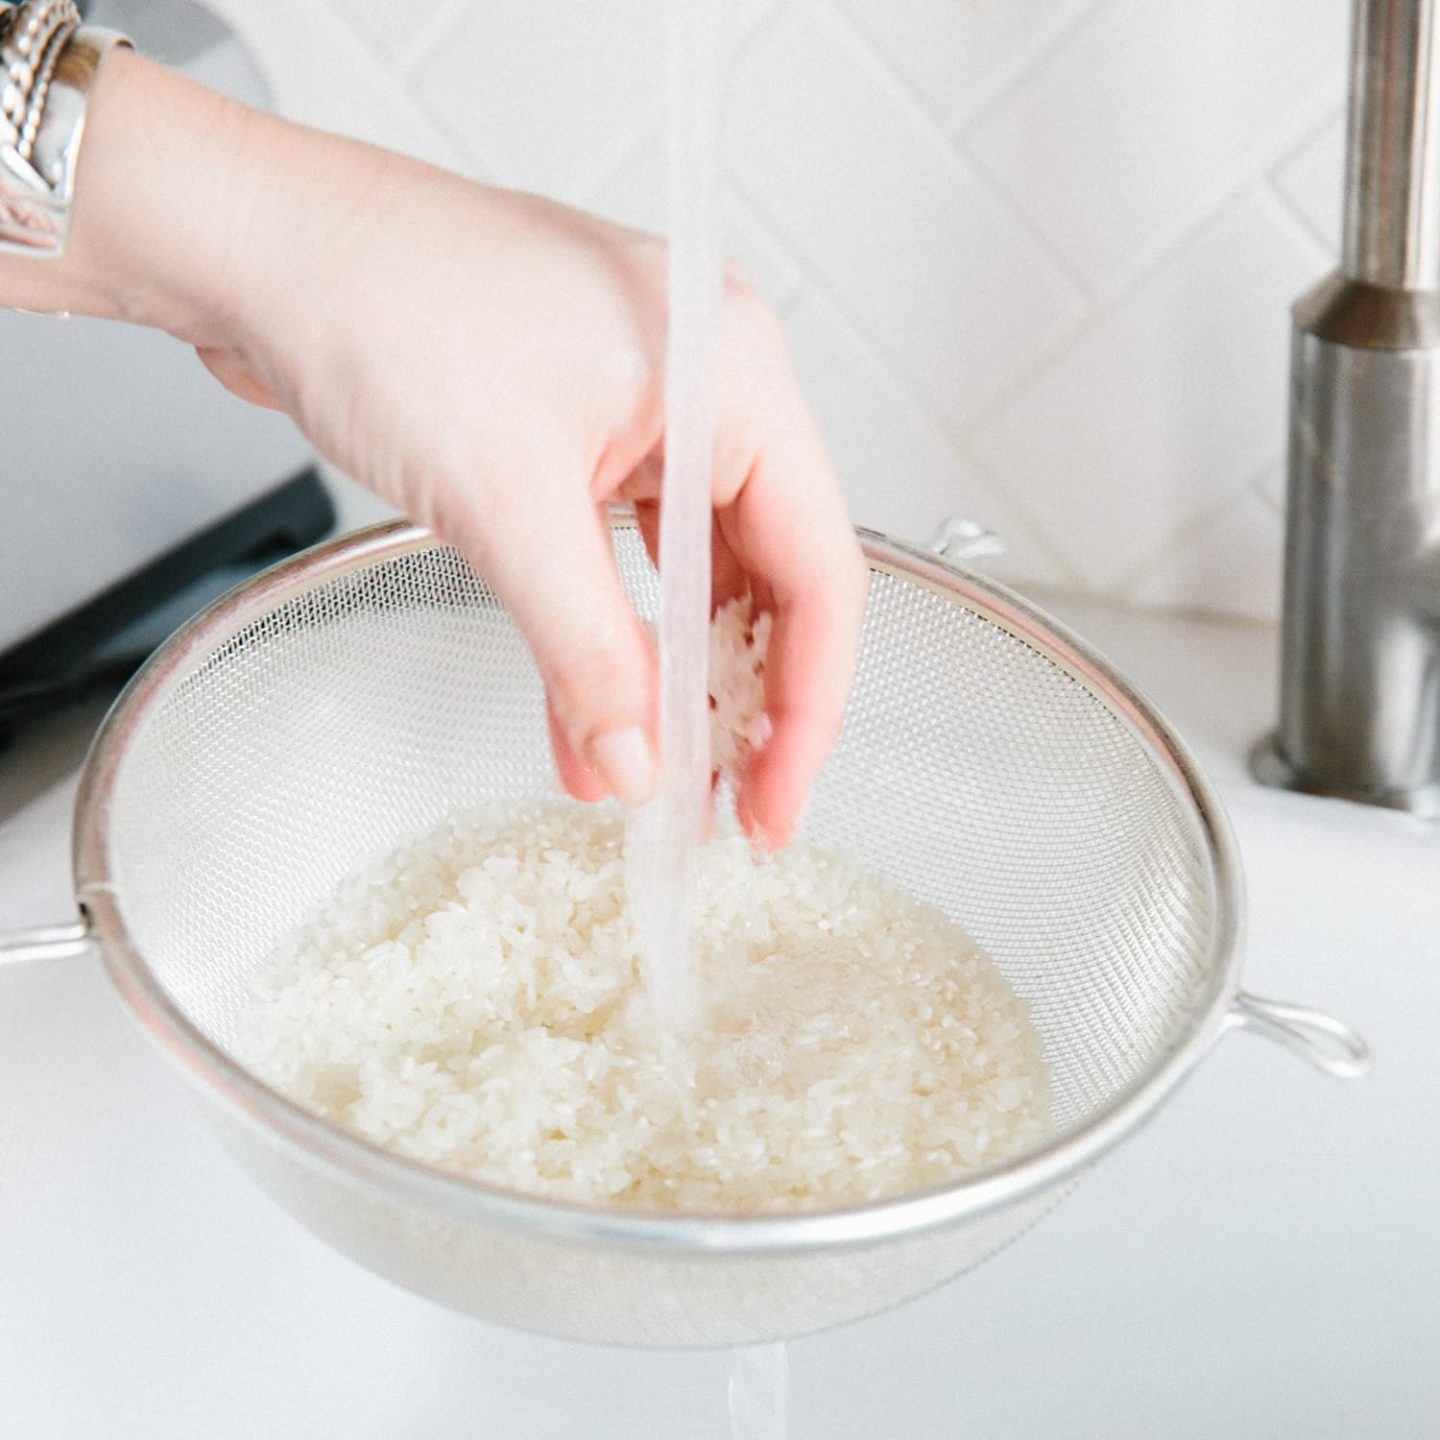 هل يجب غسل الأرز قبل الطهو؟ إلينا ما يقوله العلم